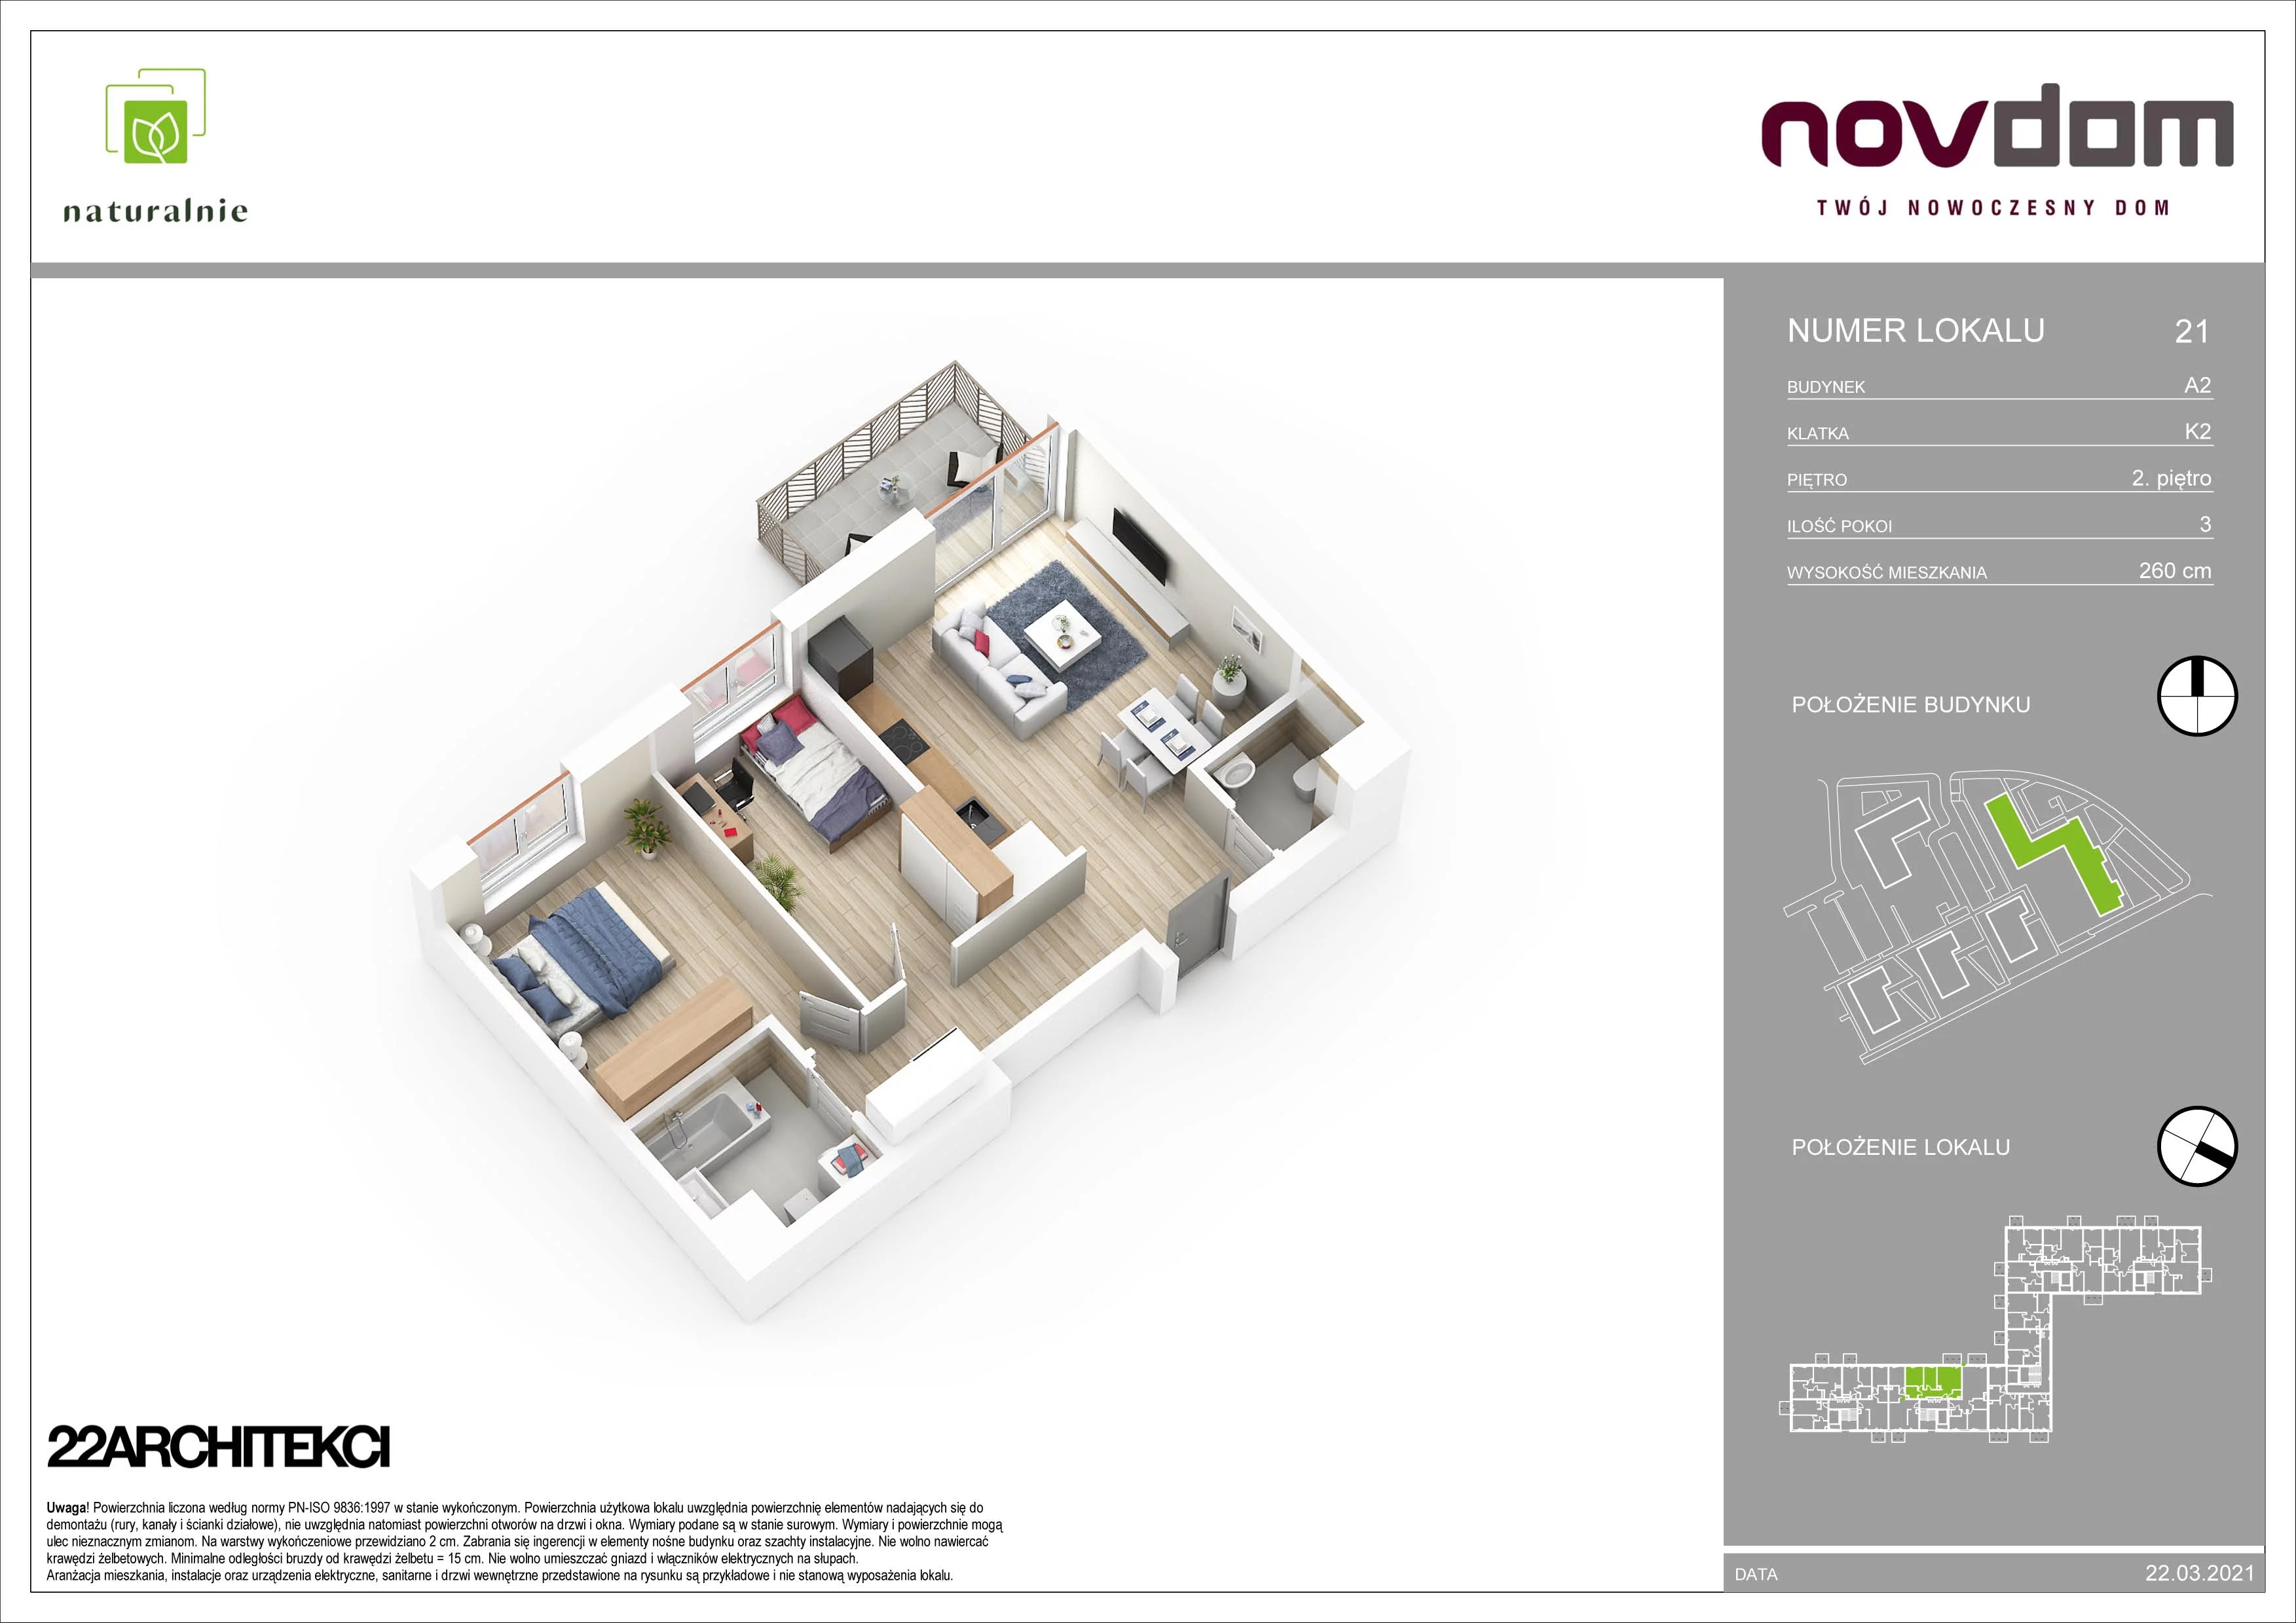 Apartament 65,22 m², piętro 2, oferta nr A2/21, Osiedle Naturalnie, Mława, ul. Nowowiejskiego